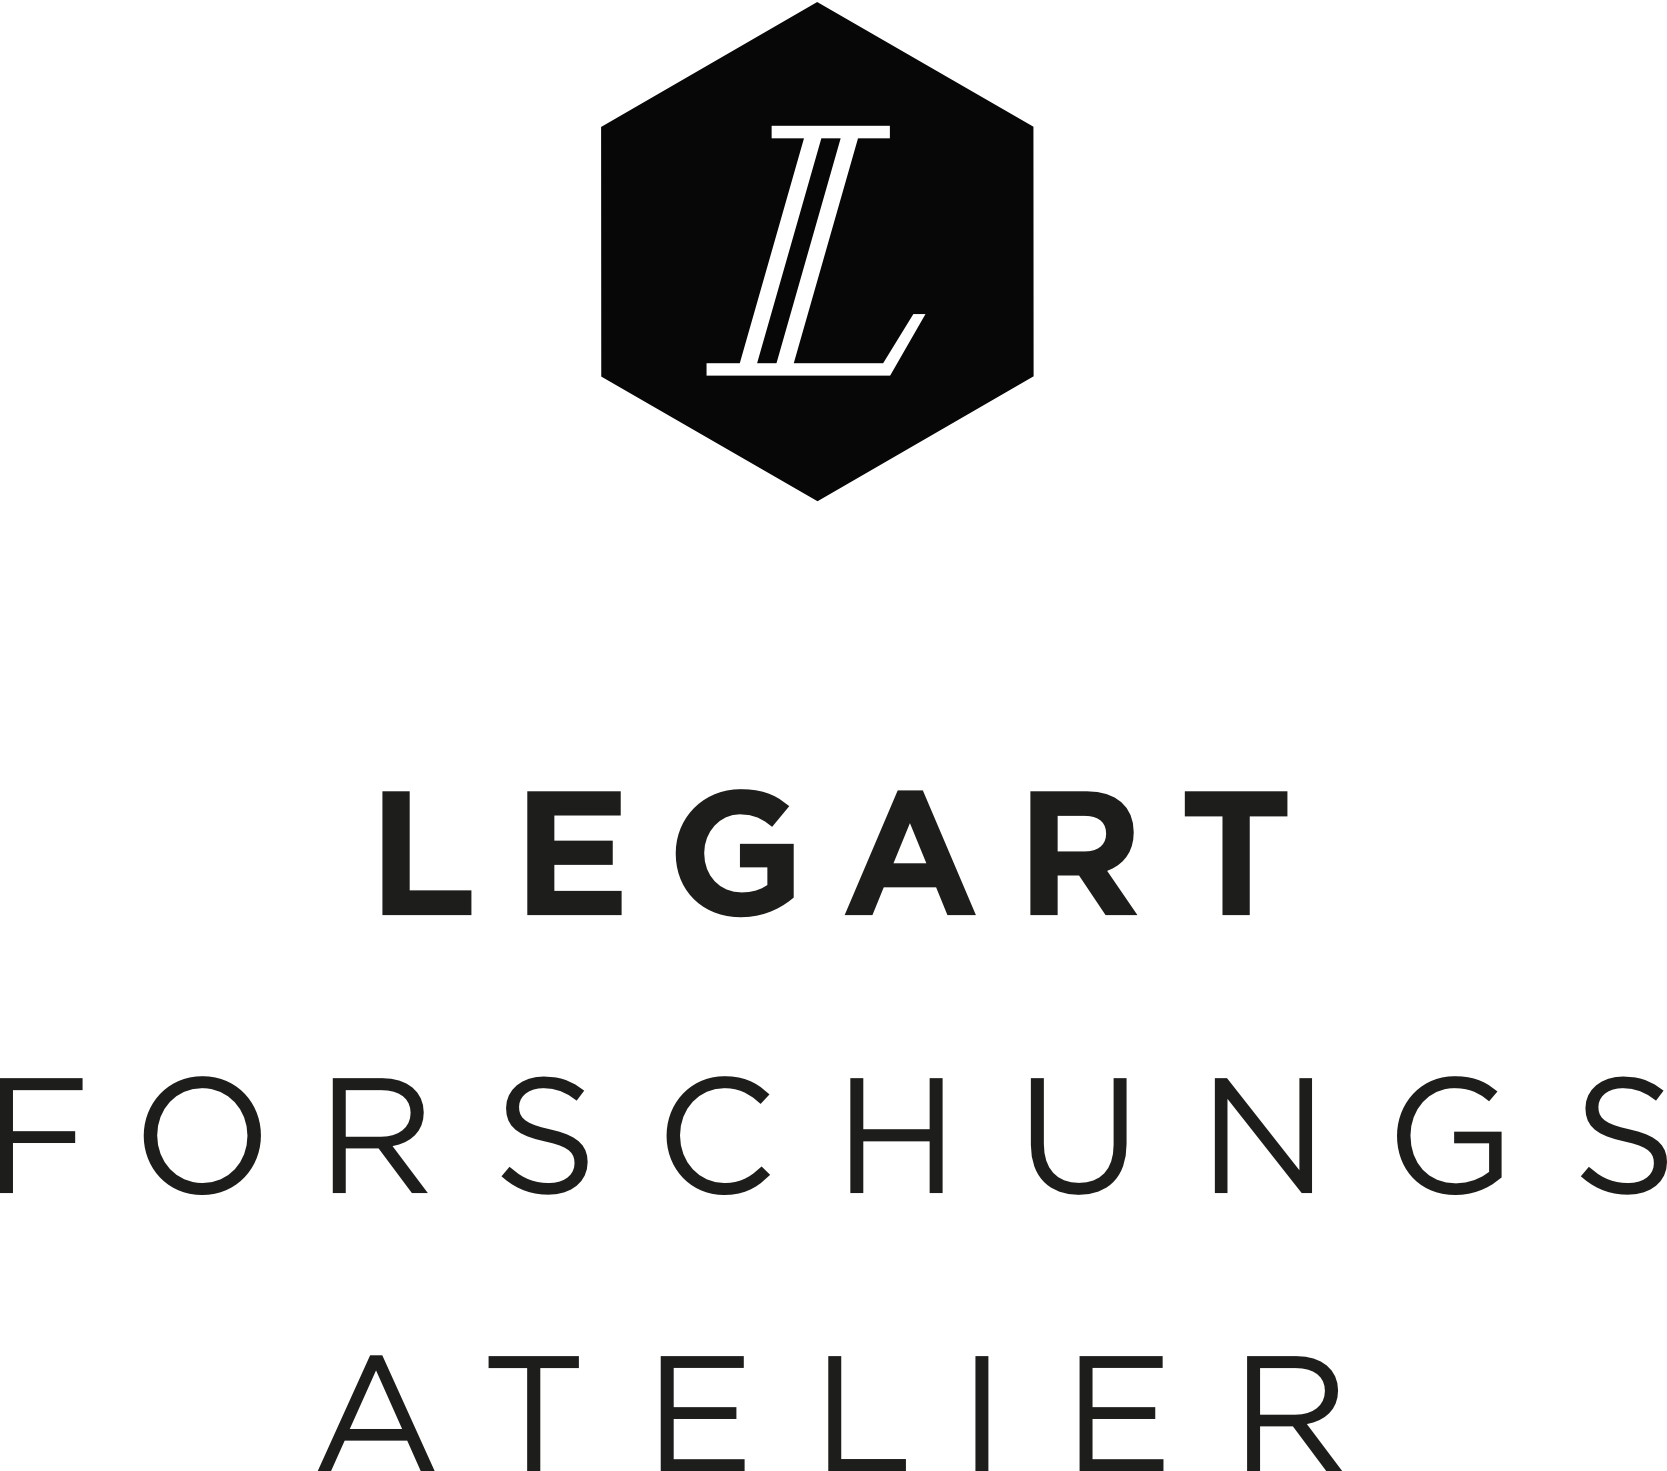 Legart Forschungsatelier GmbH